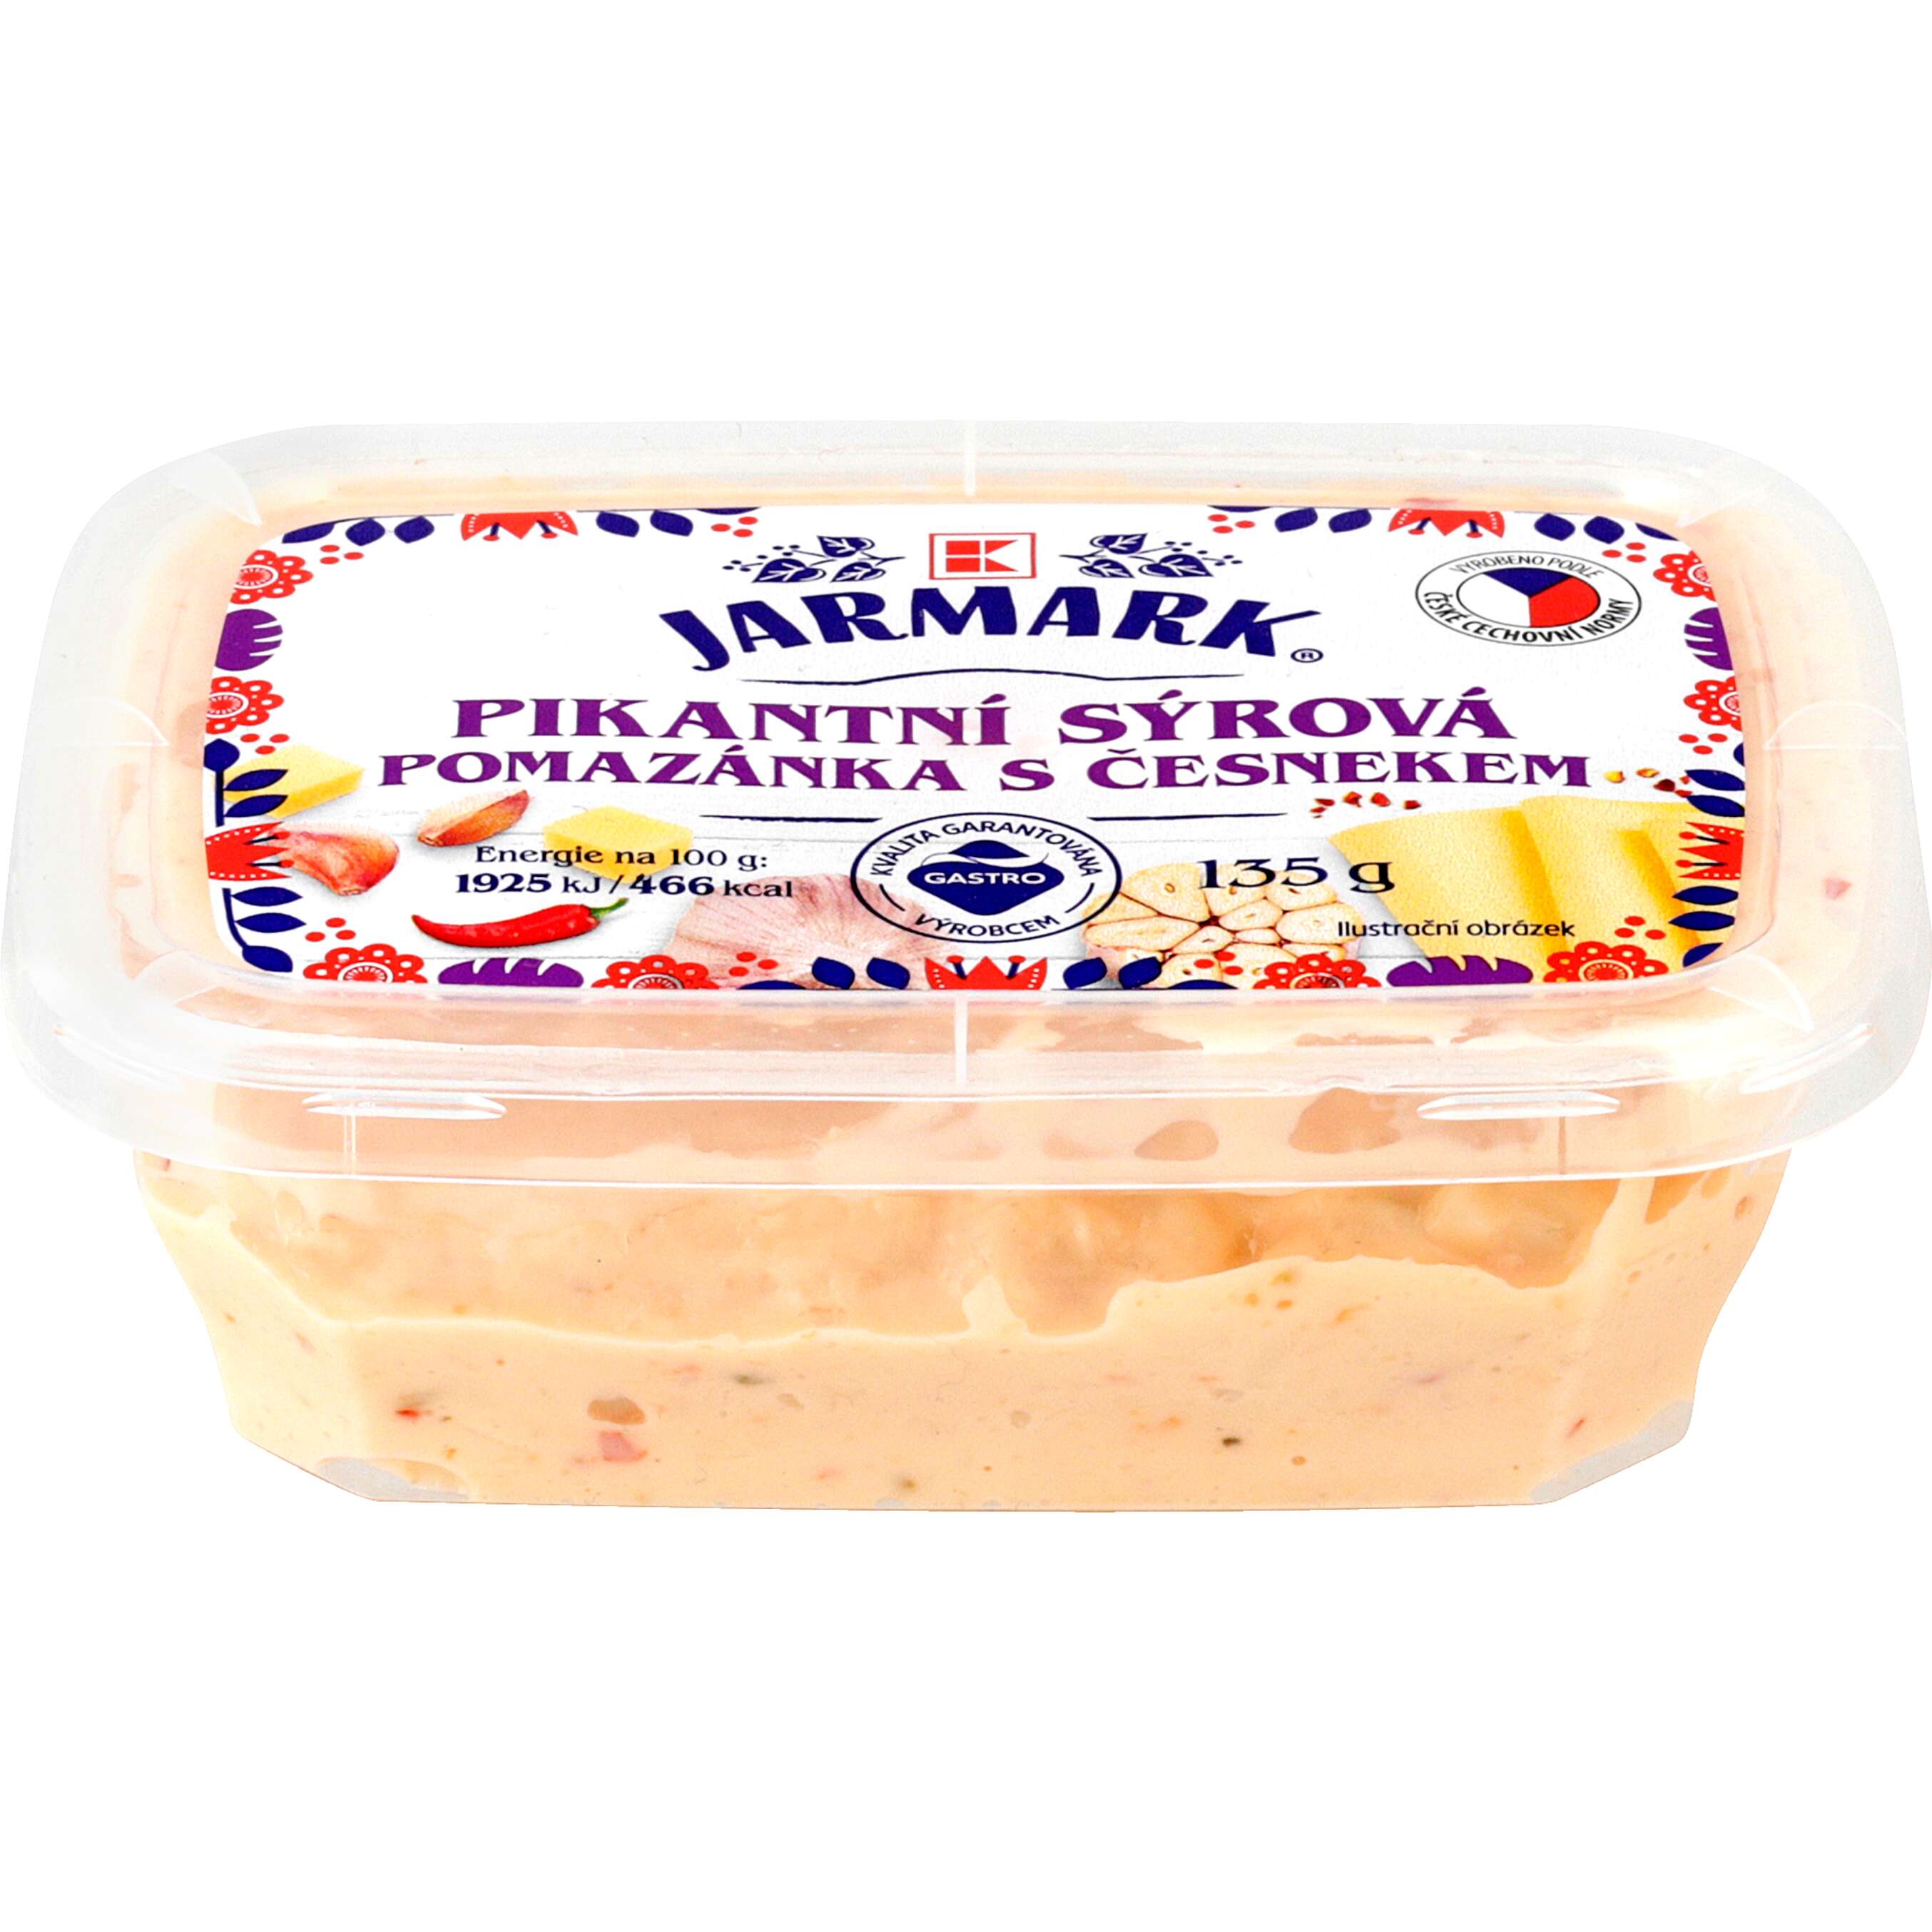 Zobrazit nabídku K-JARMARK Pikantní sýrová pomazánka